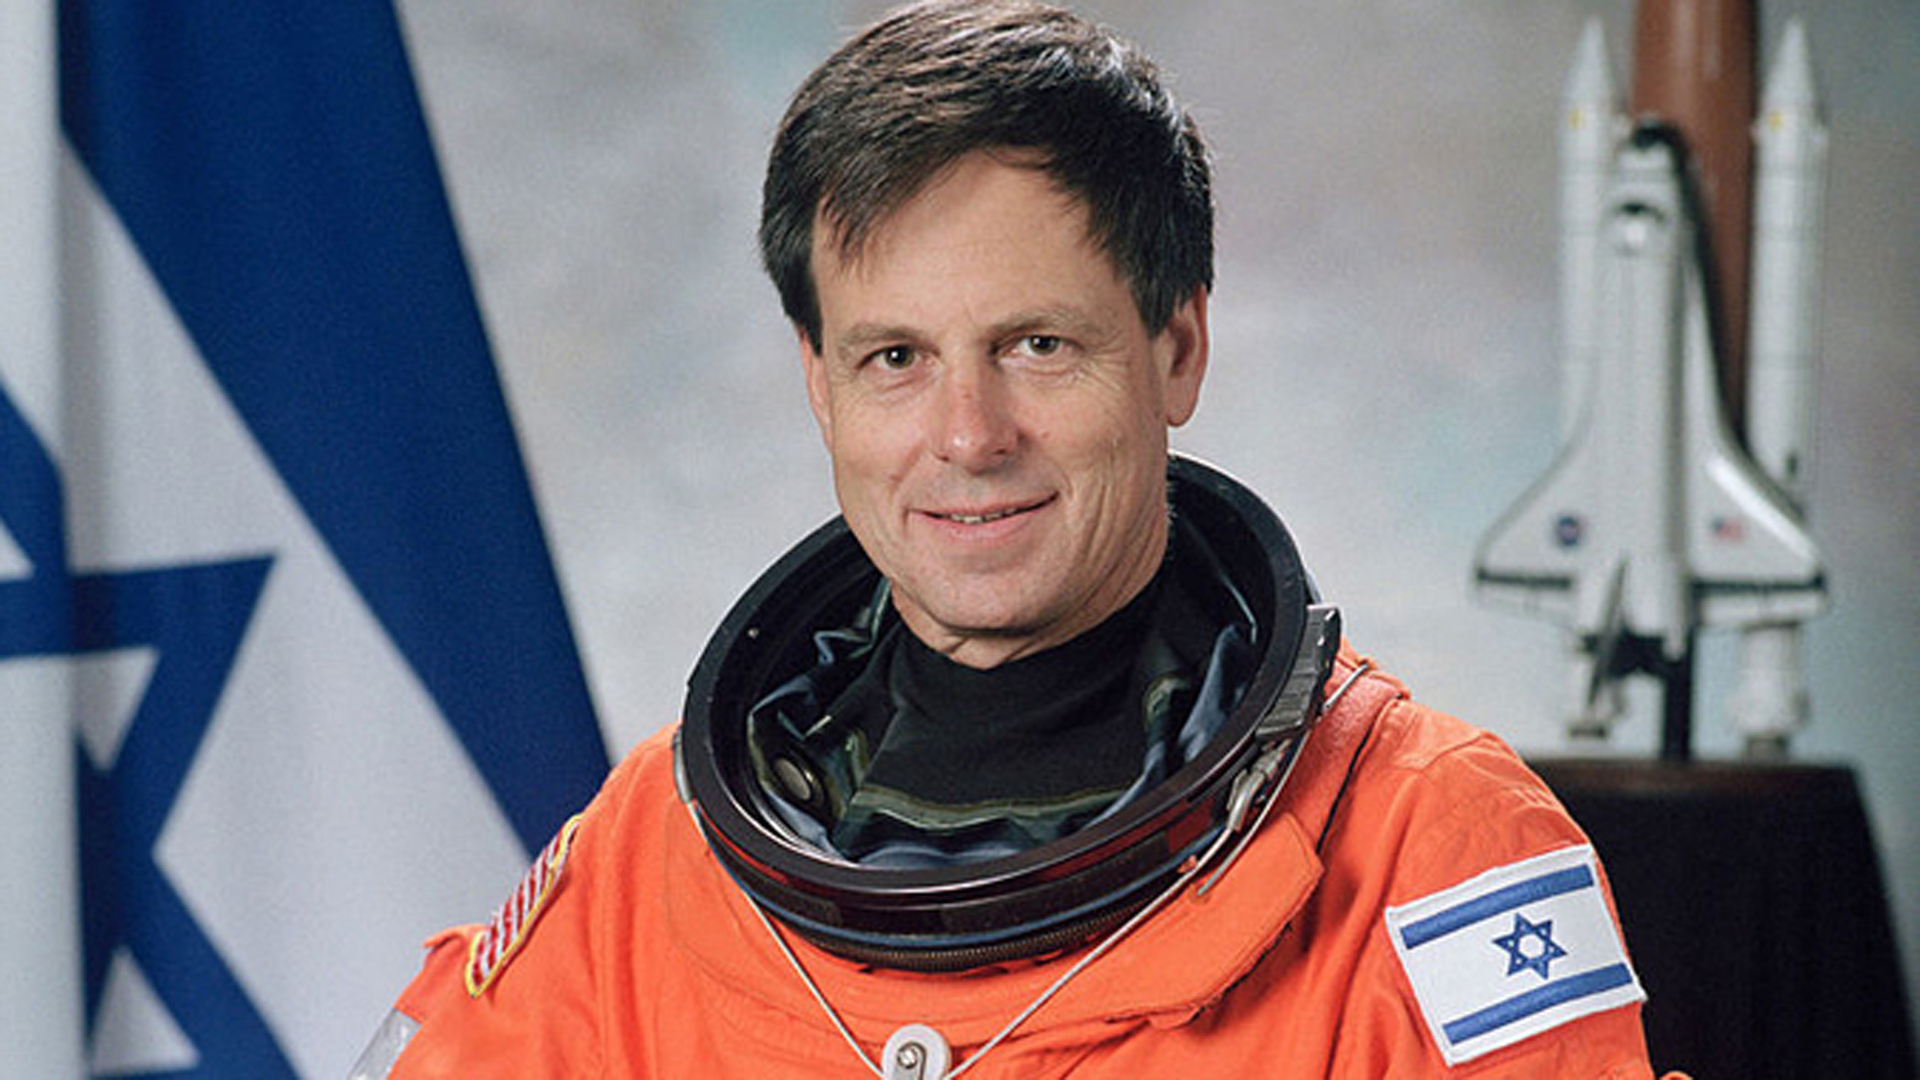 Ilan Ramon war der erste israelische Astronaut im Weltraum. Zuvor war er Kampfpilot in der israelischen Armee. Er ist der einzige Nicht-Amerikaner, der posthum mit der „Congressional Space Medal of Honor“ ausgezeichnet wurde. Ramon wurde 48 Jahre alt.